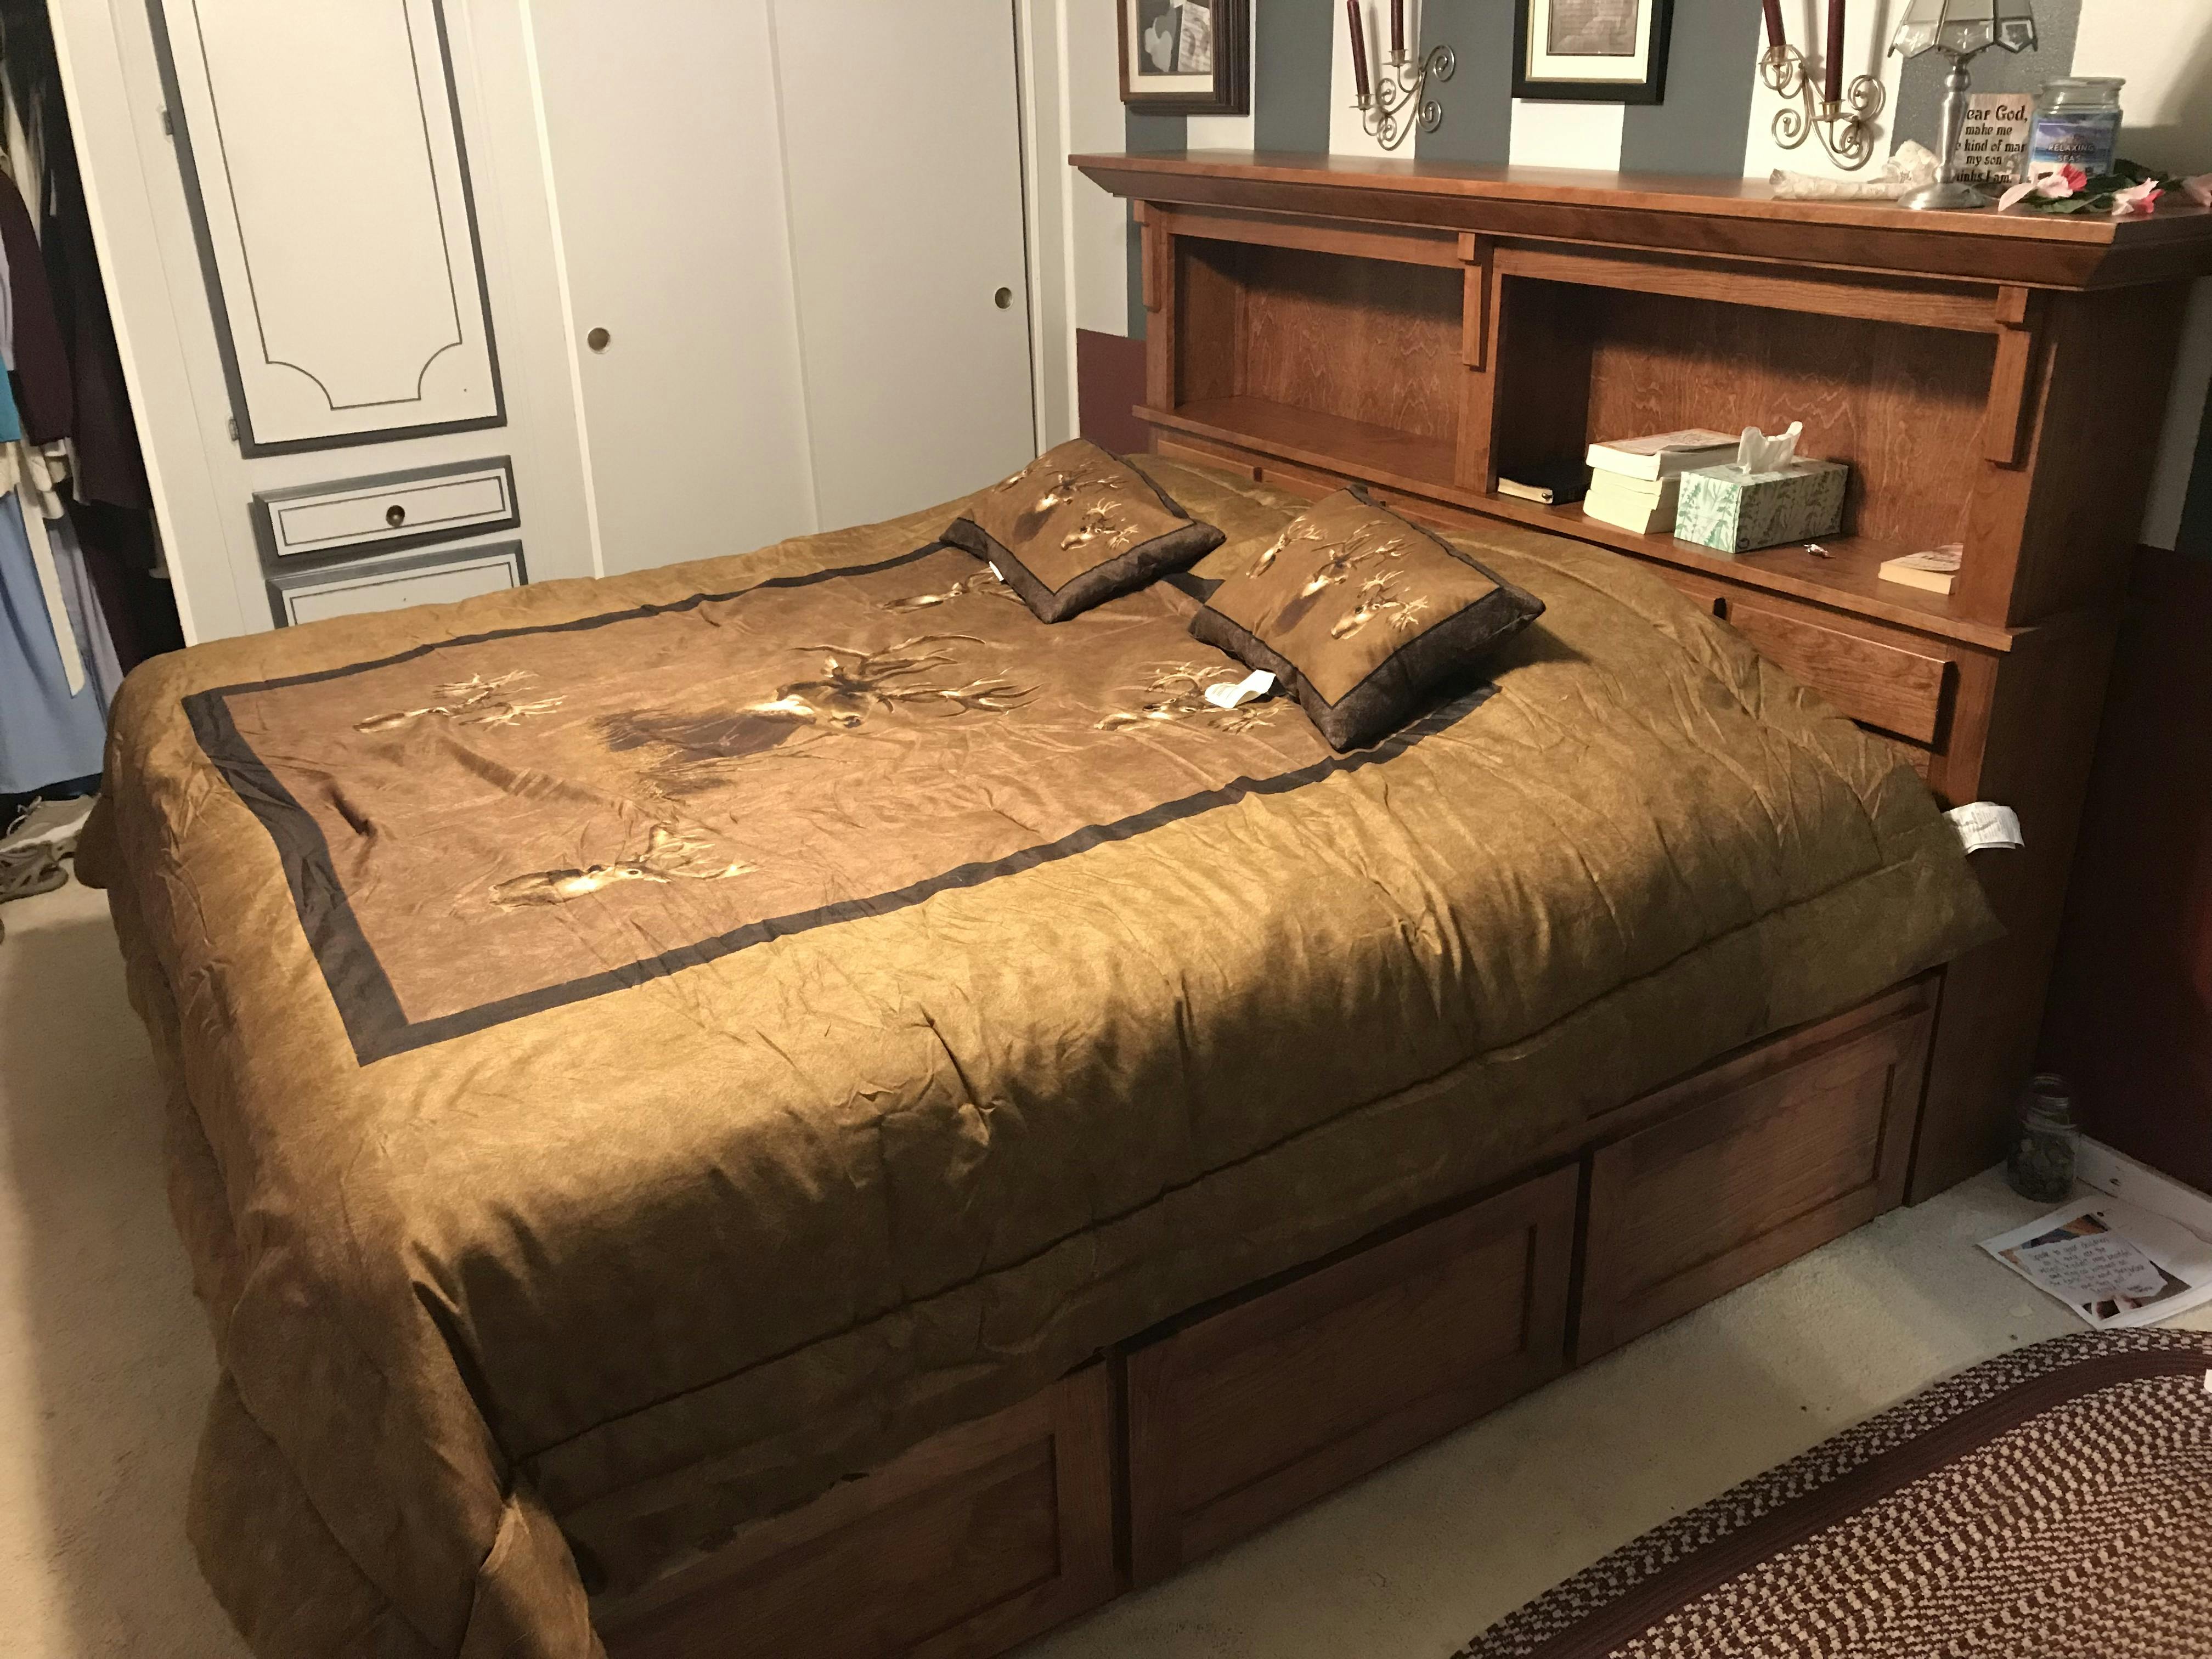 puffy mattress bed frame